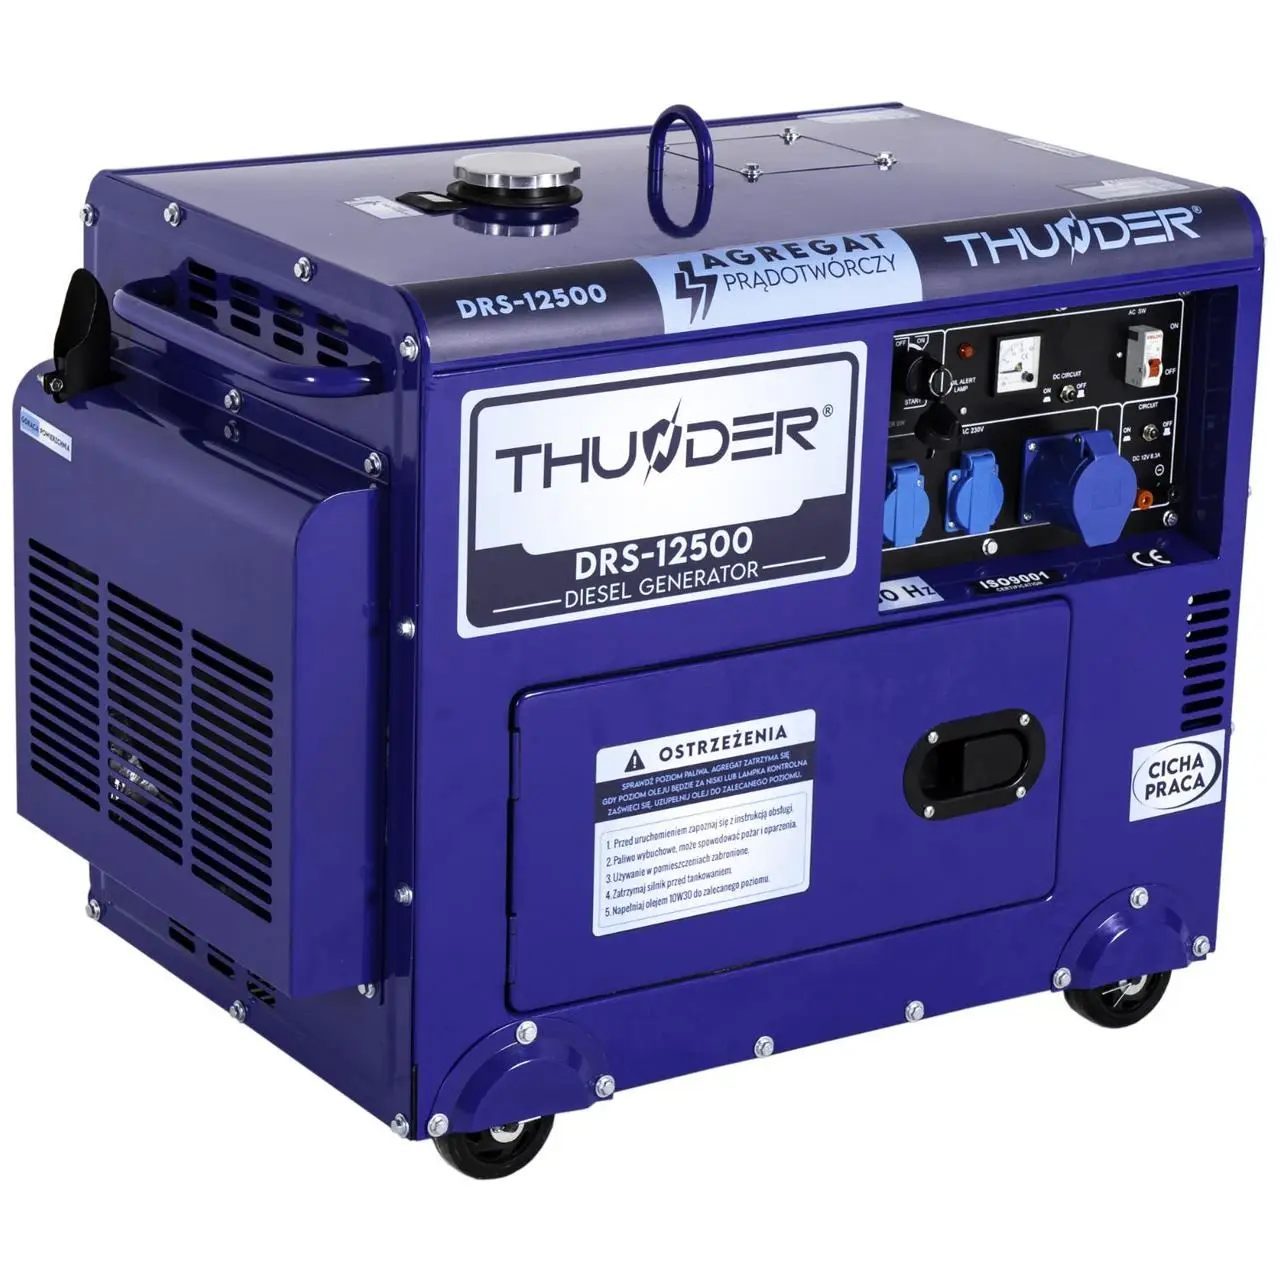   THUNDER DRS-12500 (DRS-12500)